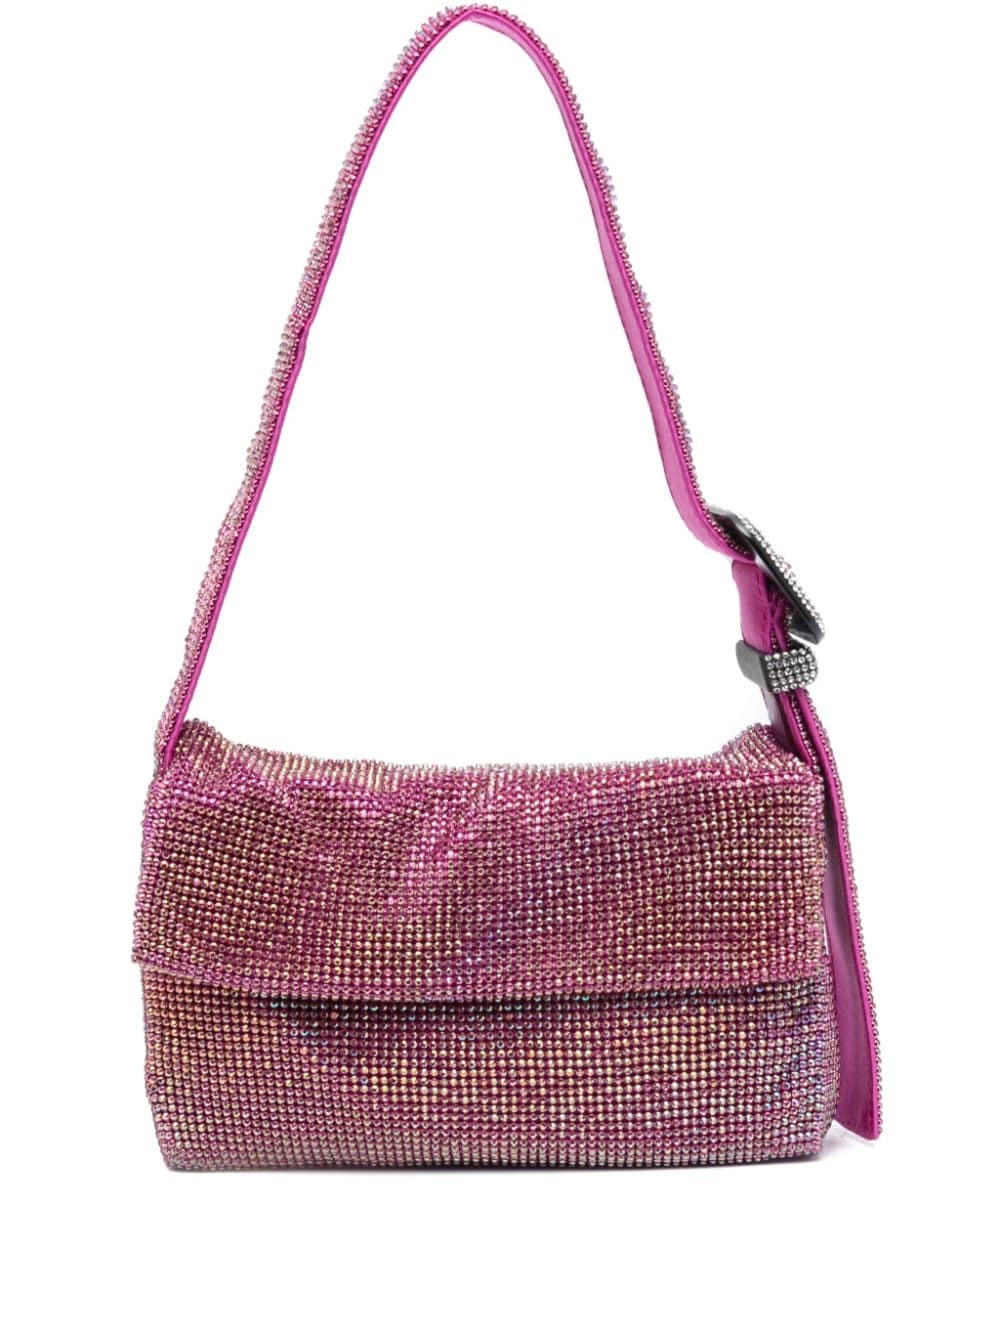 Benedetta Bruzziches Vitty La Mignon shoulder bag - Pink